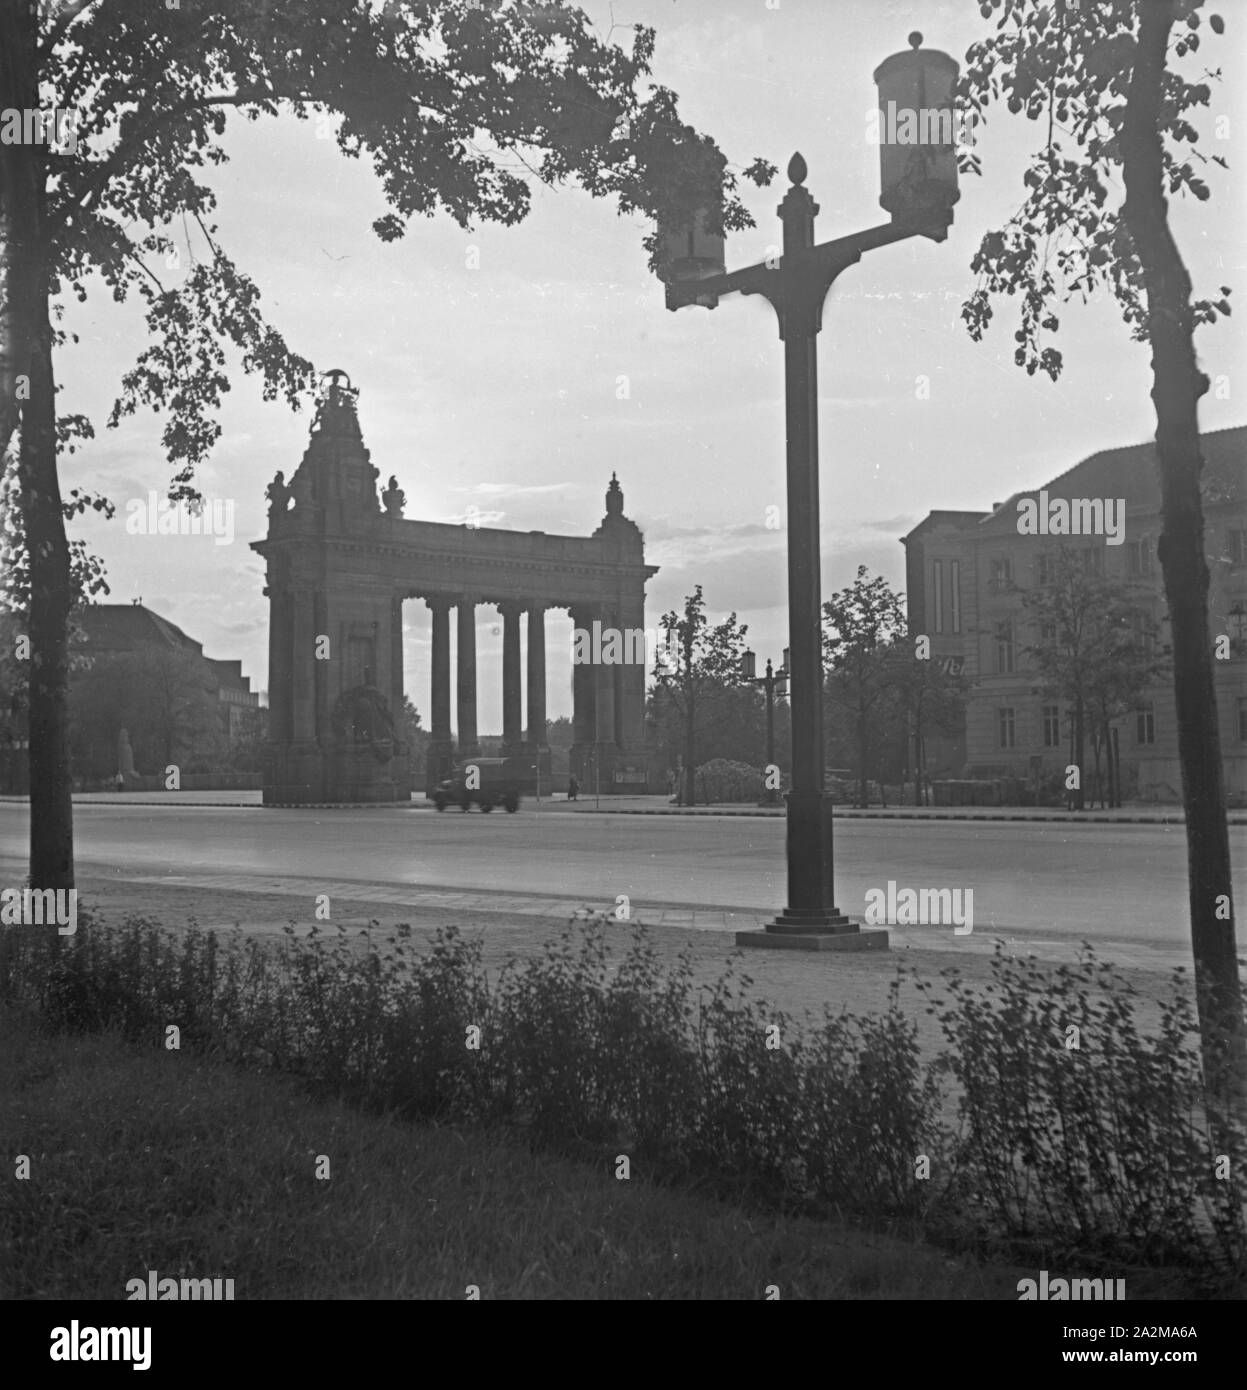 Torbogen als Denkmal in Berlin, Deutschland 1940. Torbogen als Denkmal in Berlin, Deutschland 1940. Stockfoto